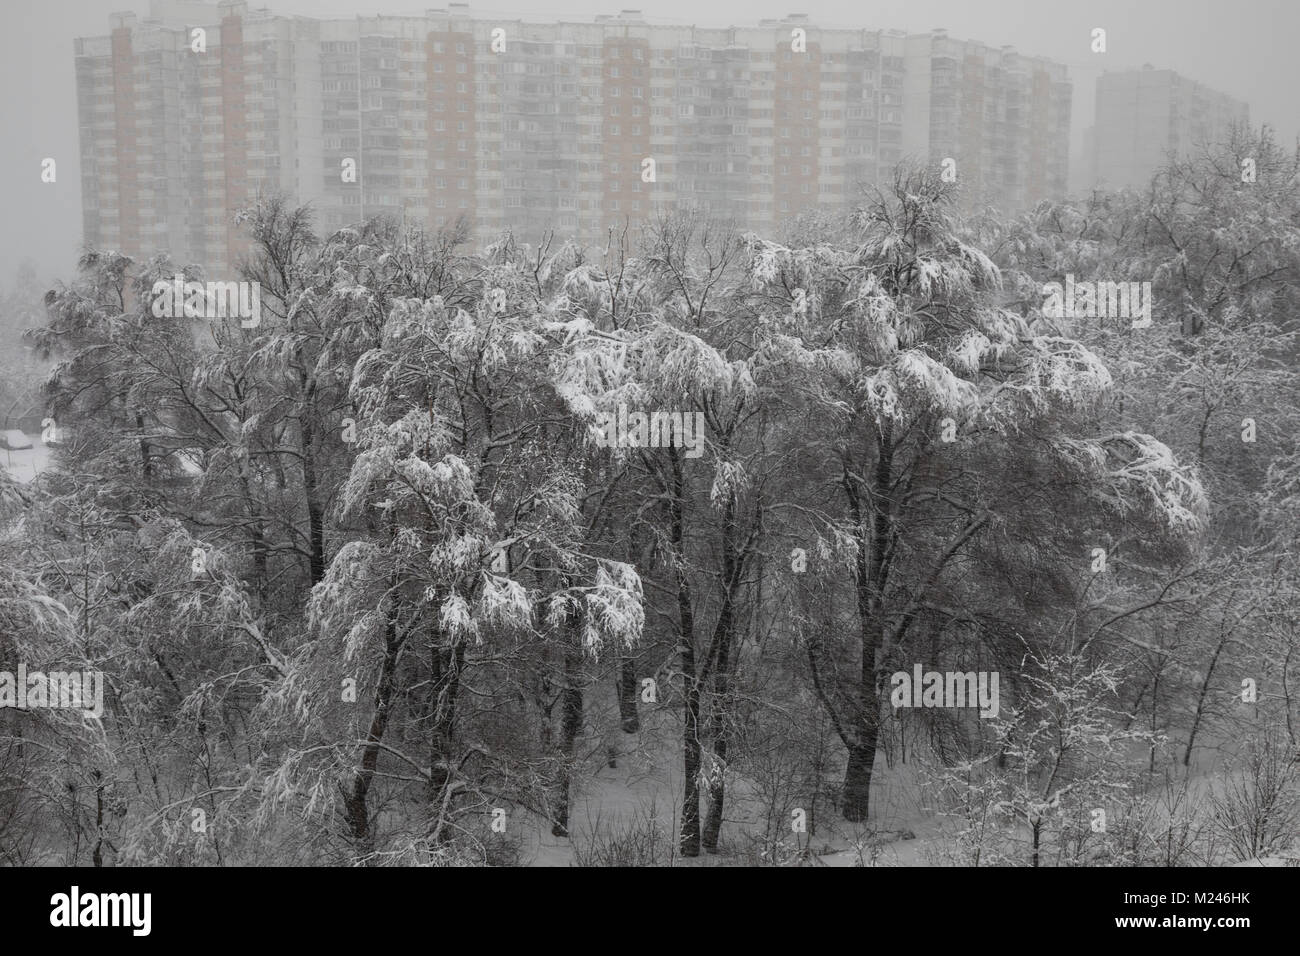 Moscou, Russie - 4 Février, 2018 : vue sur le parc à la périphérie de Moscou lors de neige anormale dans la région de Moscou, Russie Crédit : Nikolay Vinokourov/Alamy Live News Banque D'Images